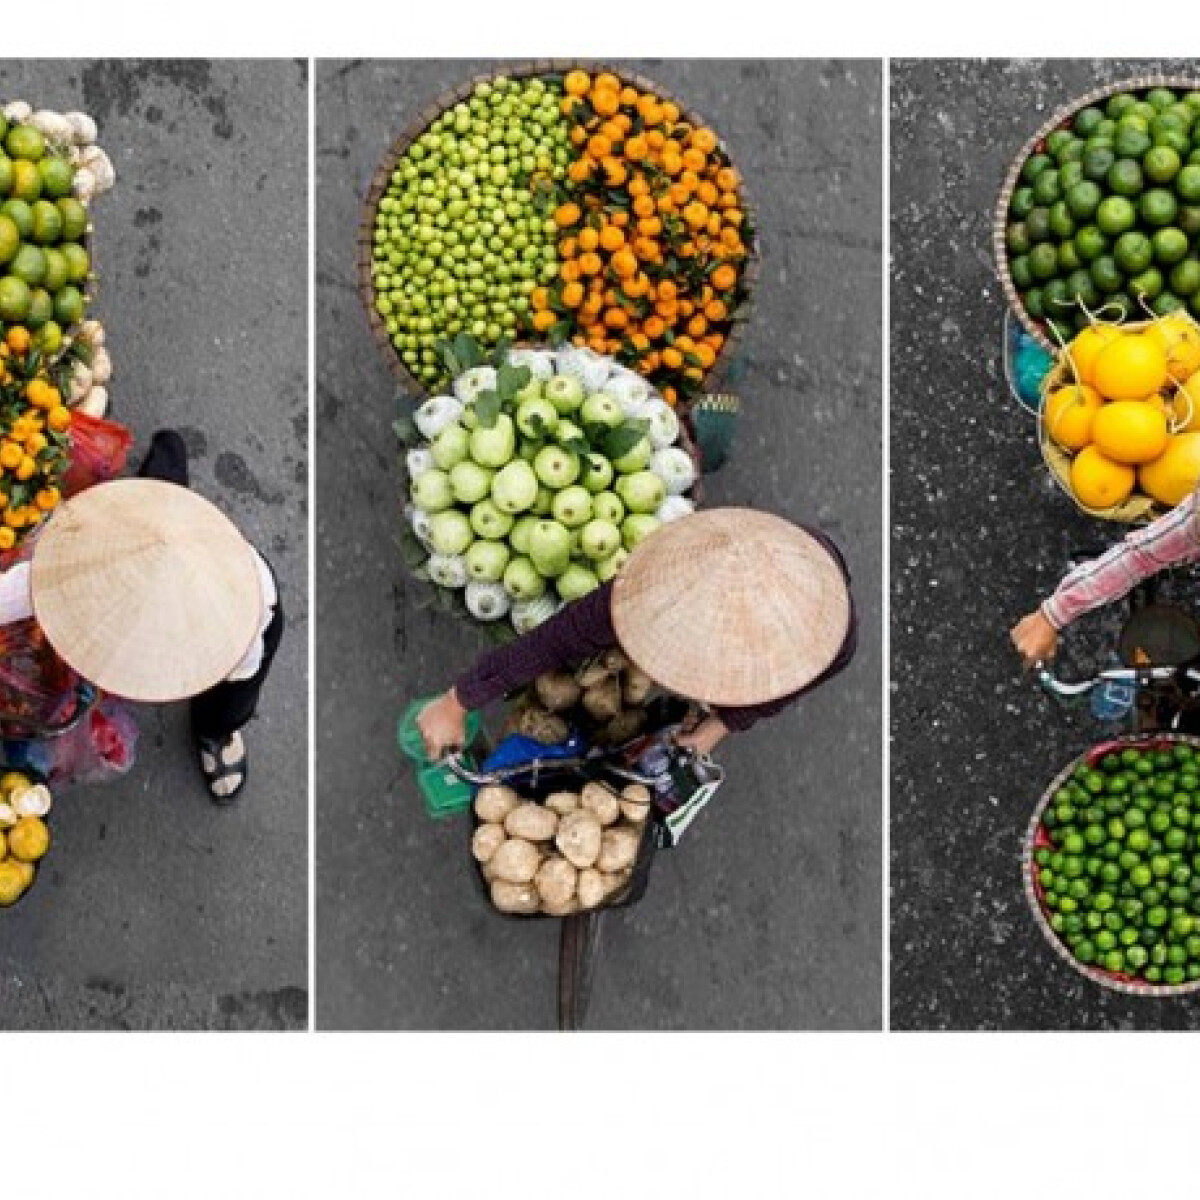 Ez a fotós hidakon ácsorogva fotózza a vietnámi utcai árusokat - élvezd te is!